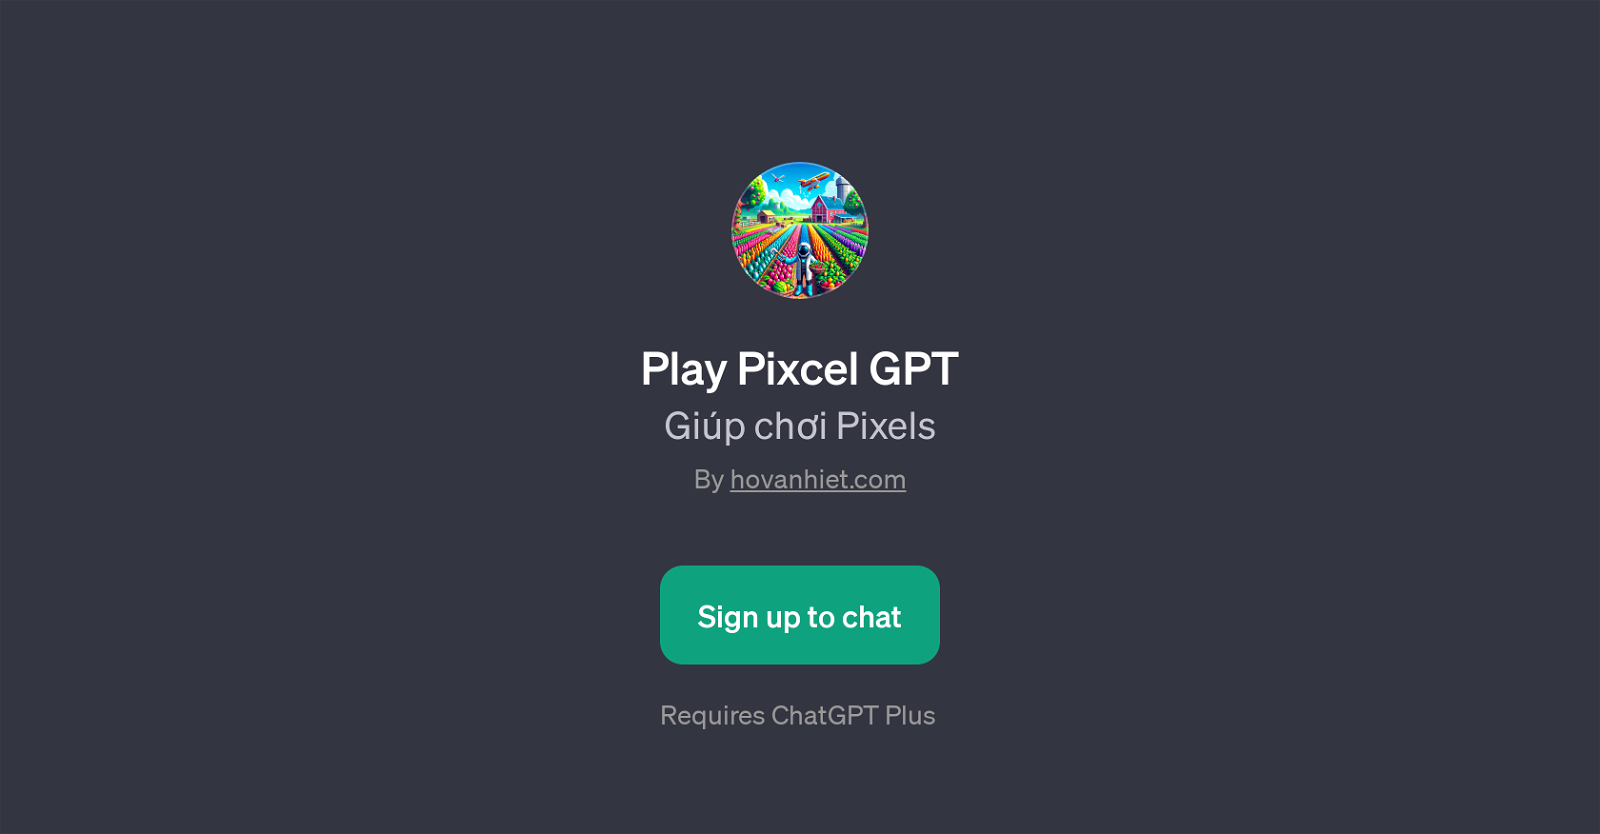 Play Pixcel GPT website